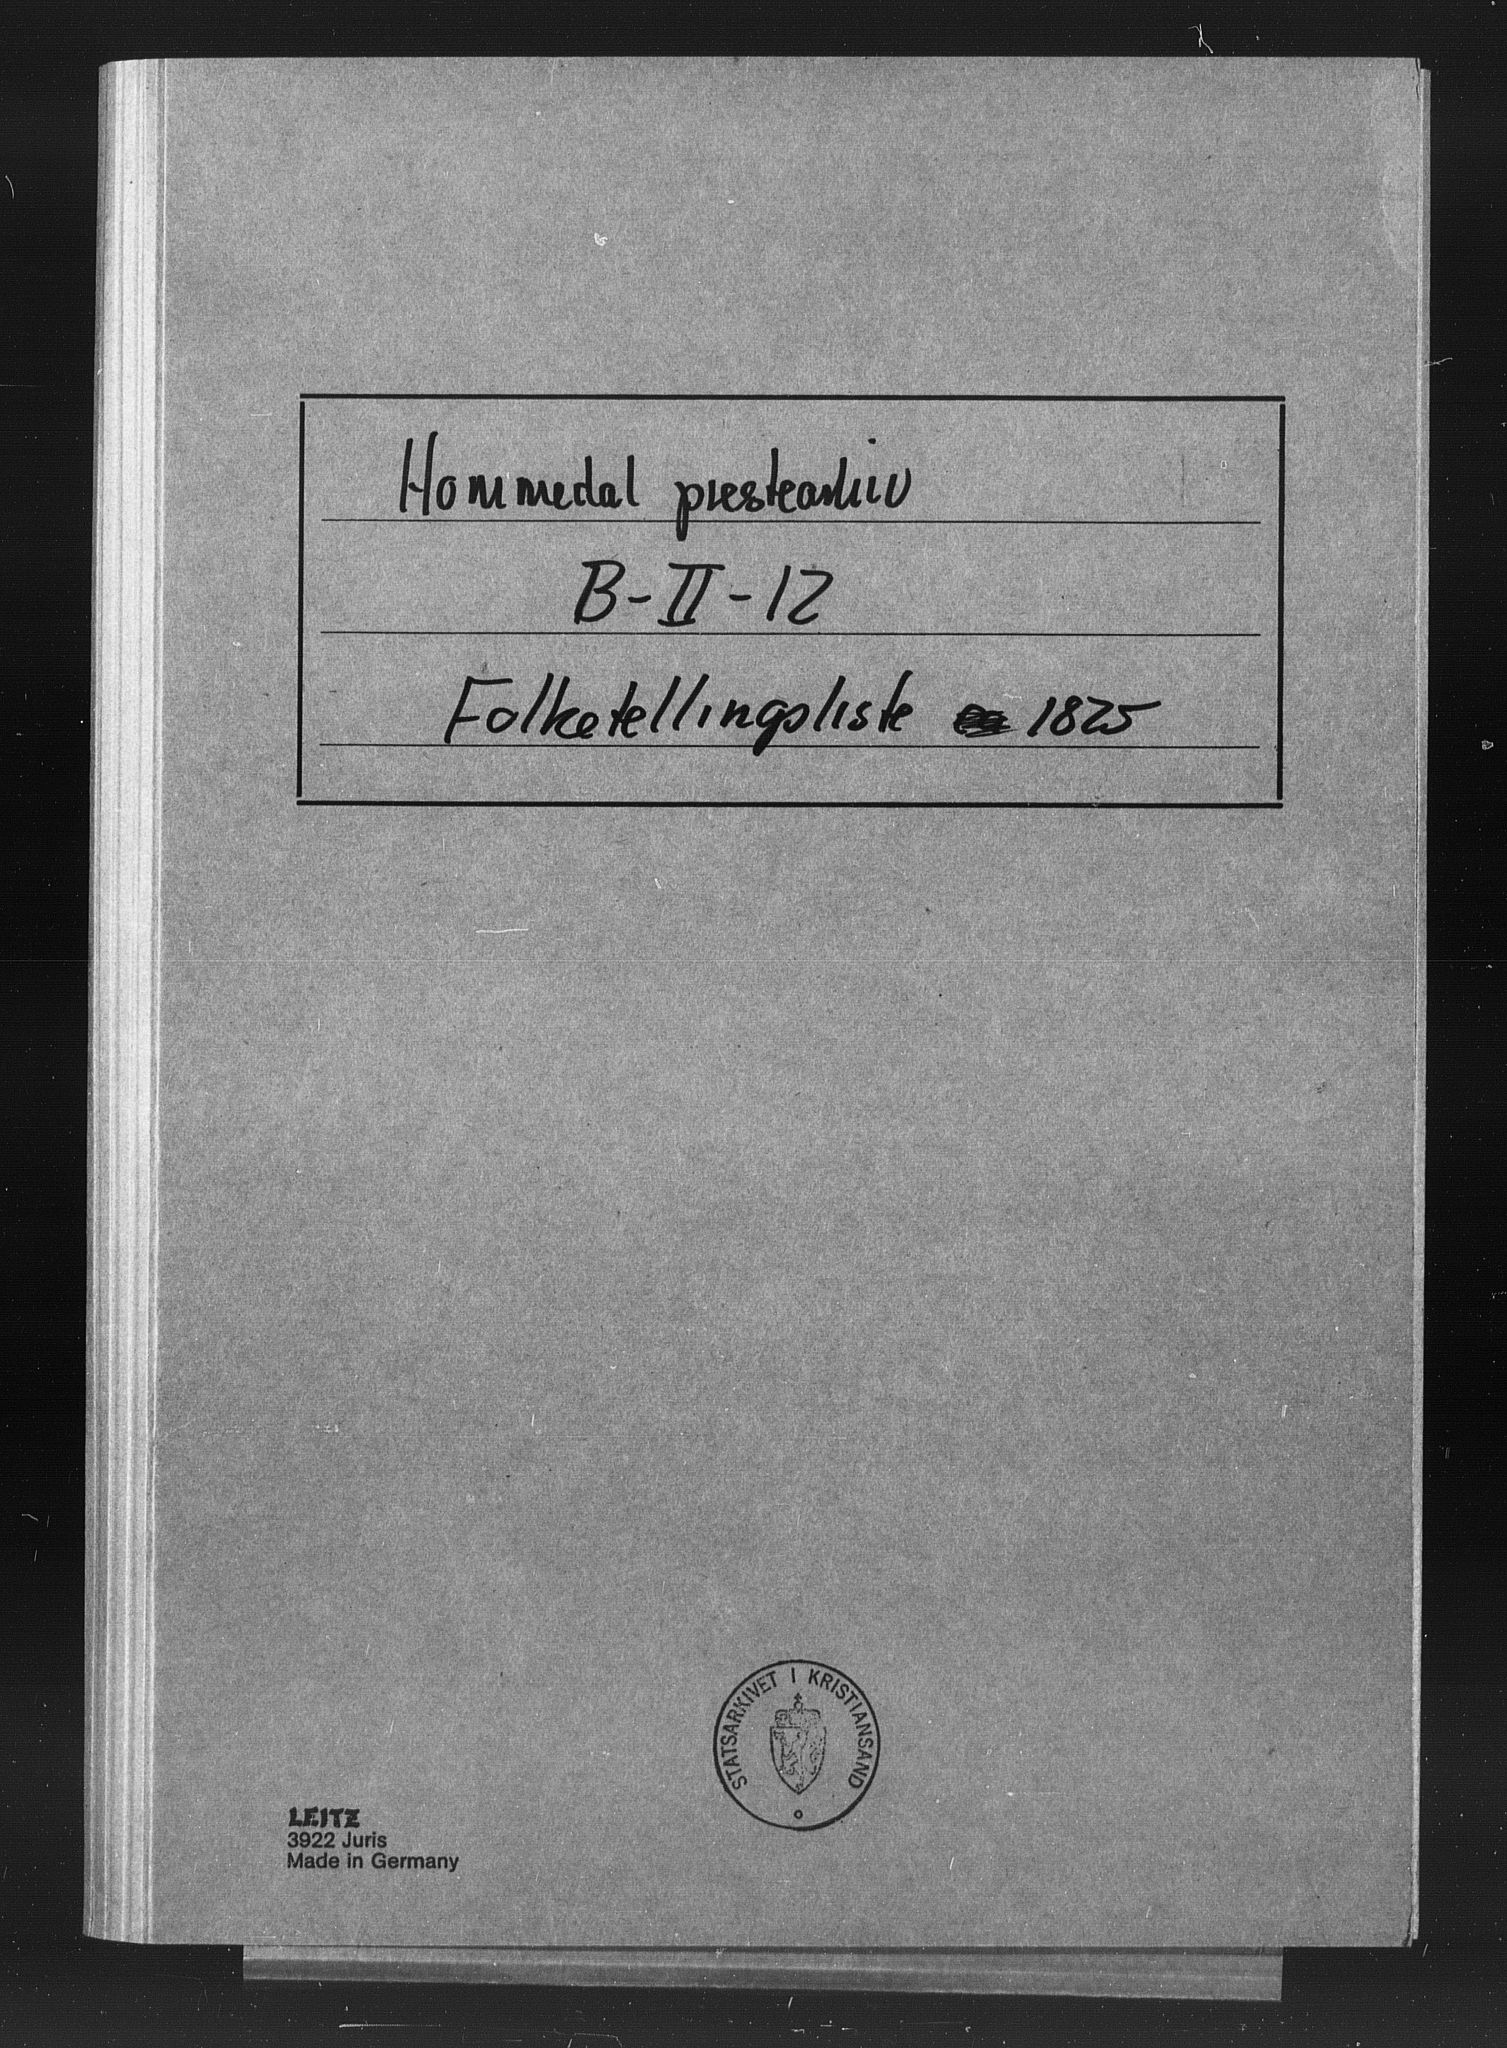 SAK, Folketelling 1825 for Homedal prestegjeld, 0924S1 Landvik sokn og 0925S2 Eide sokn, 1825, s. 1